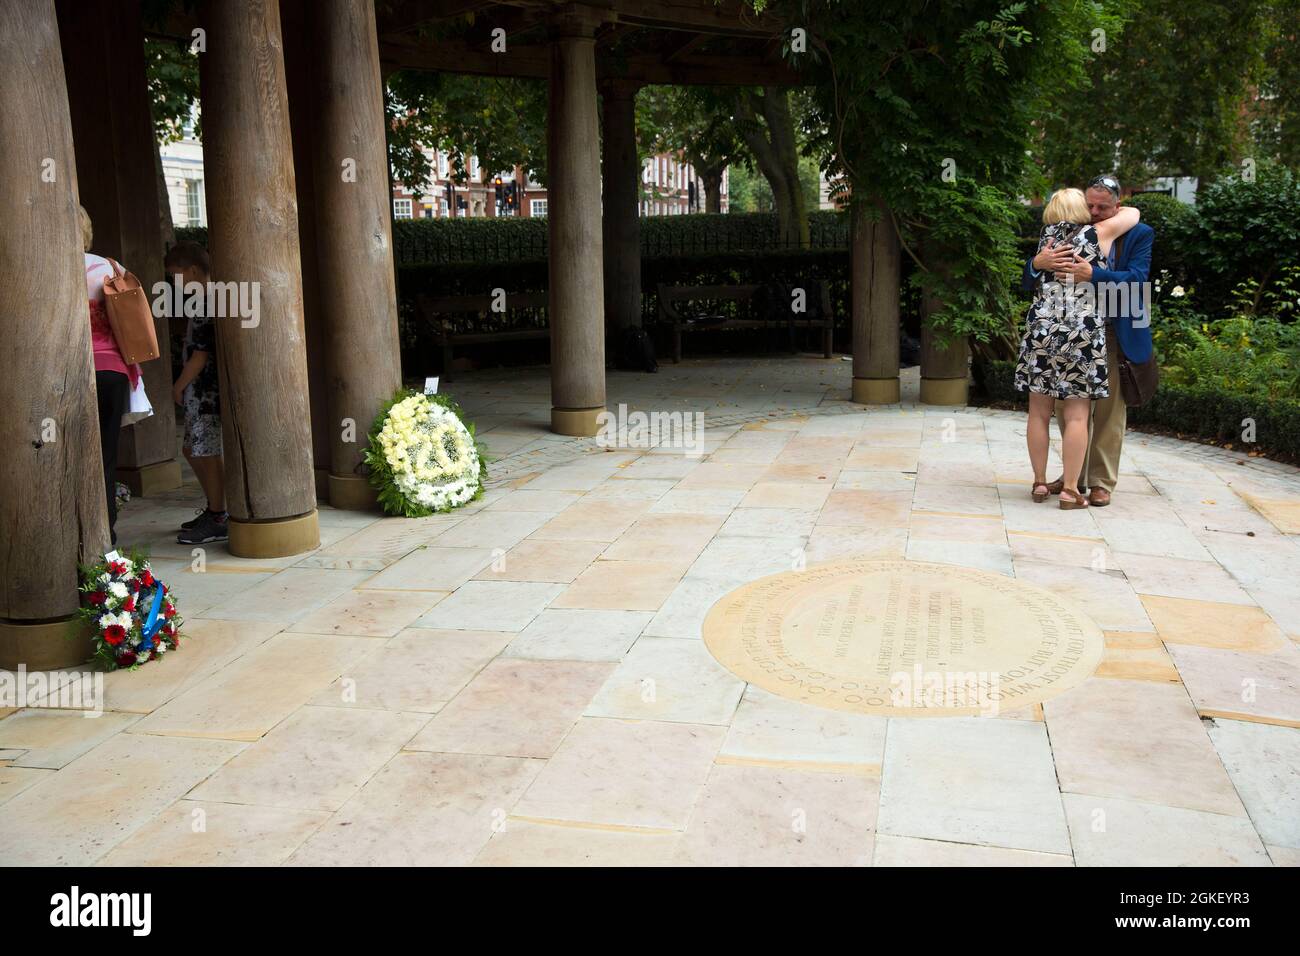 La gente visita un monumento conmemorativo a las víctimas de los atentados terroristas de 9/11 en Grosvenor Square, Londres, en el 20th aniversario de los ataques, el 11 de septiembre de 2020 Foto de stock